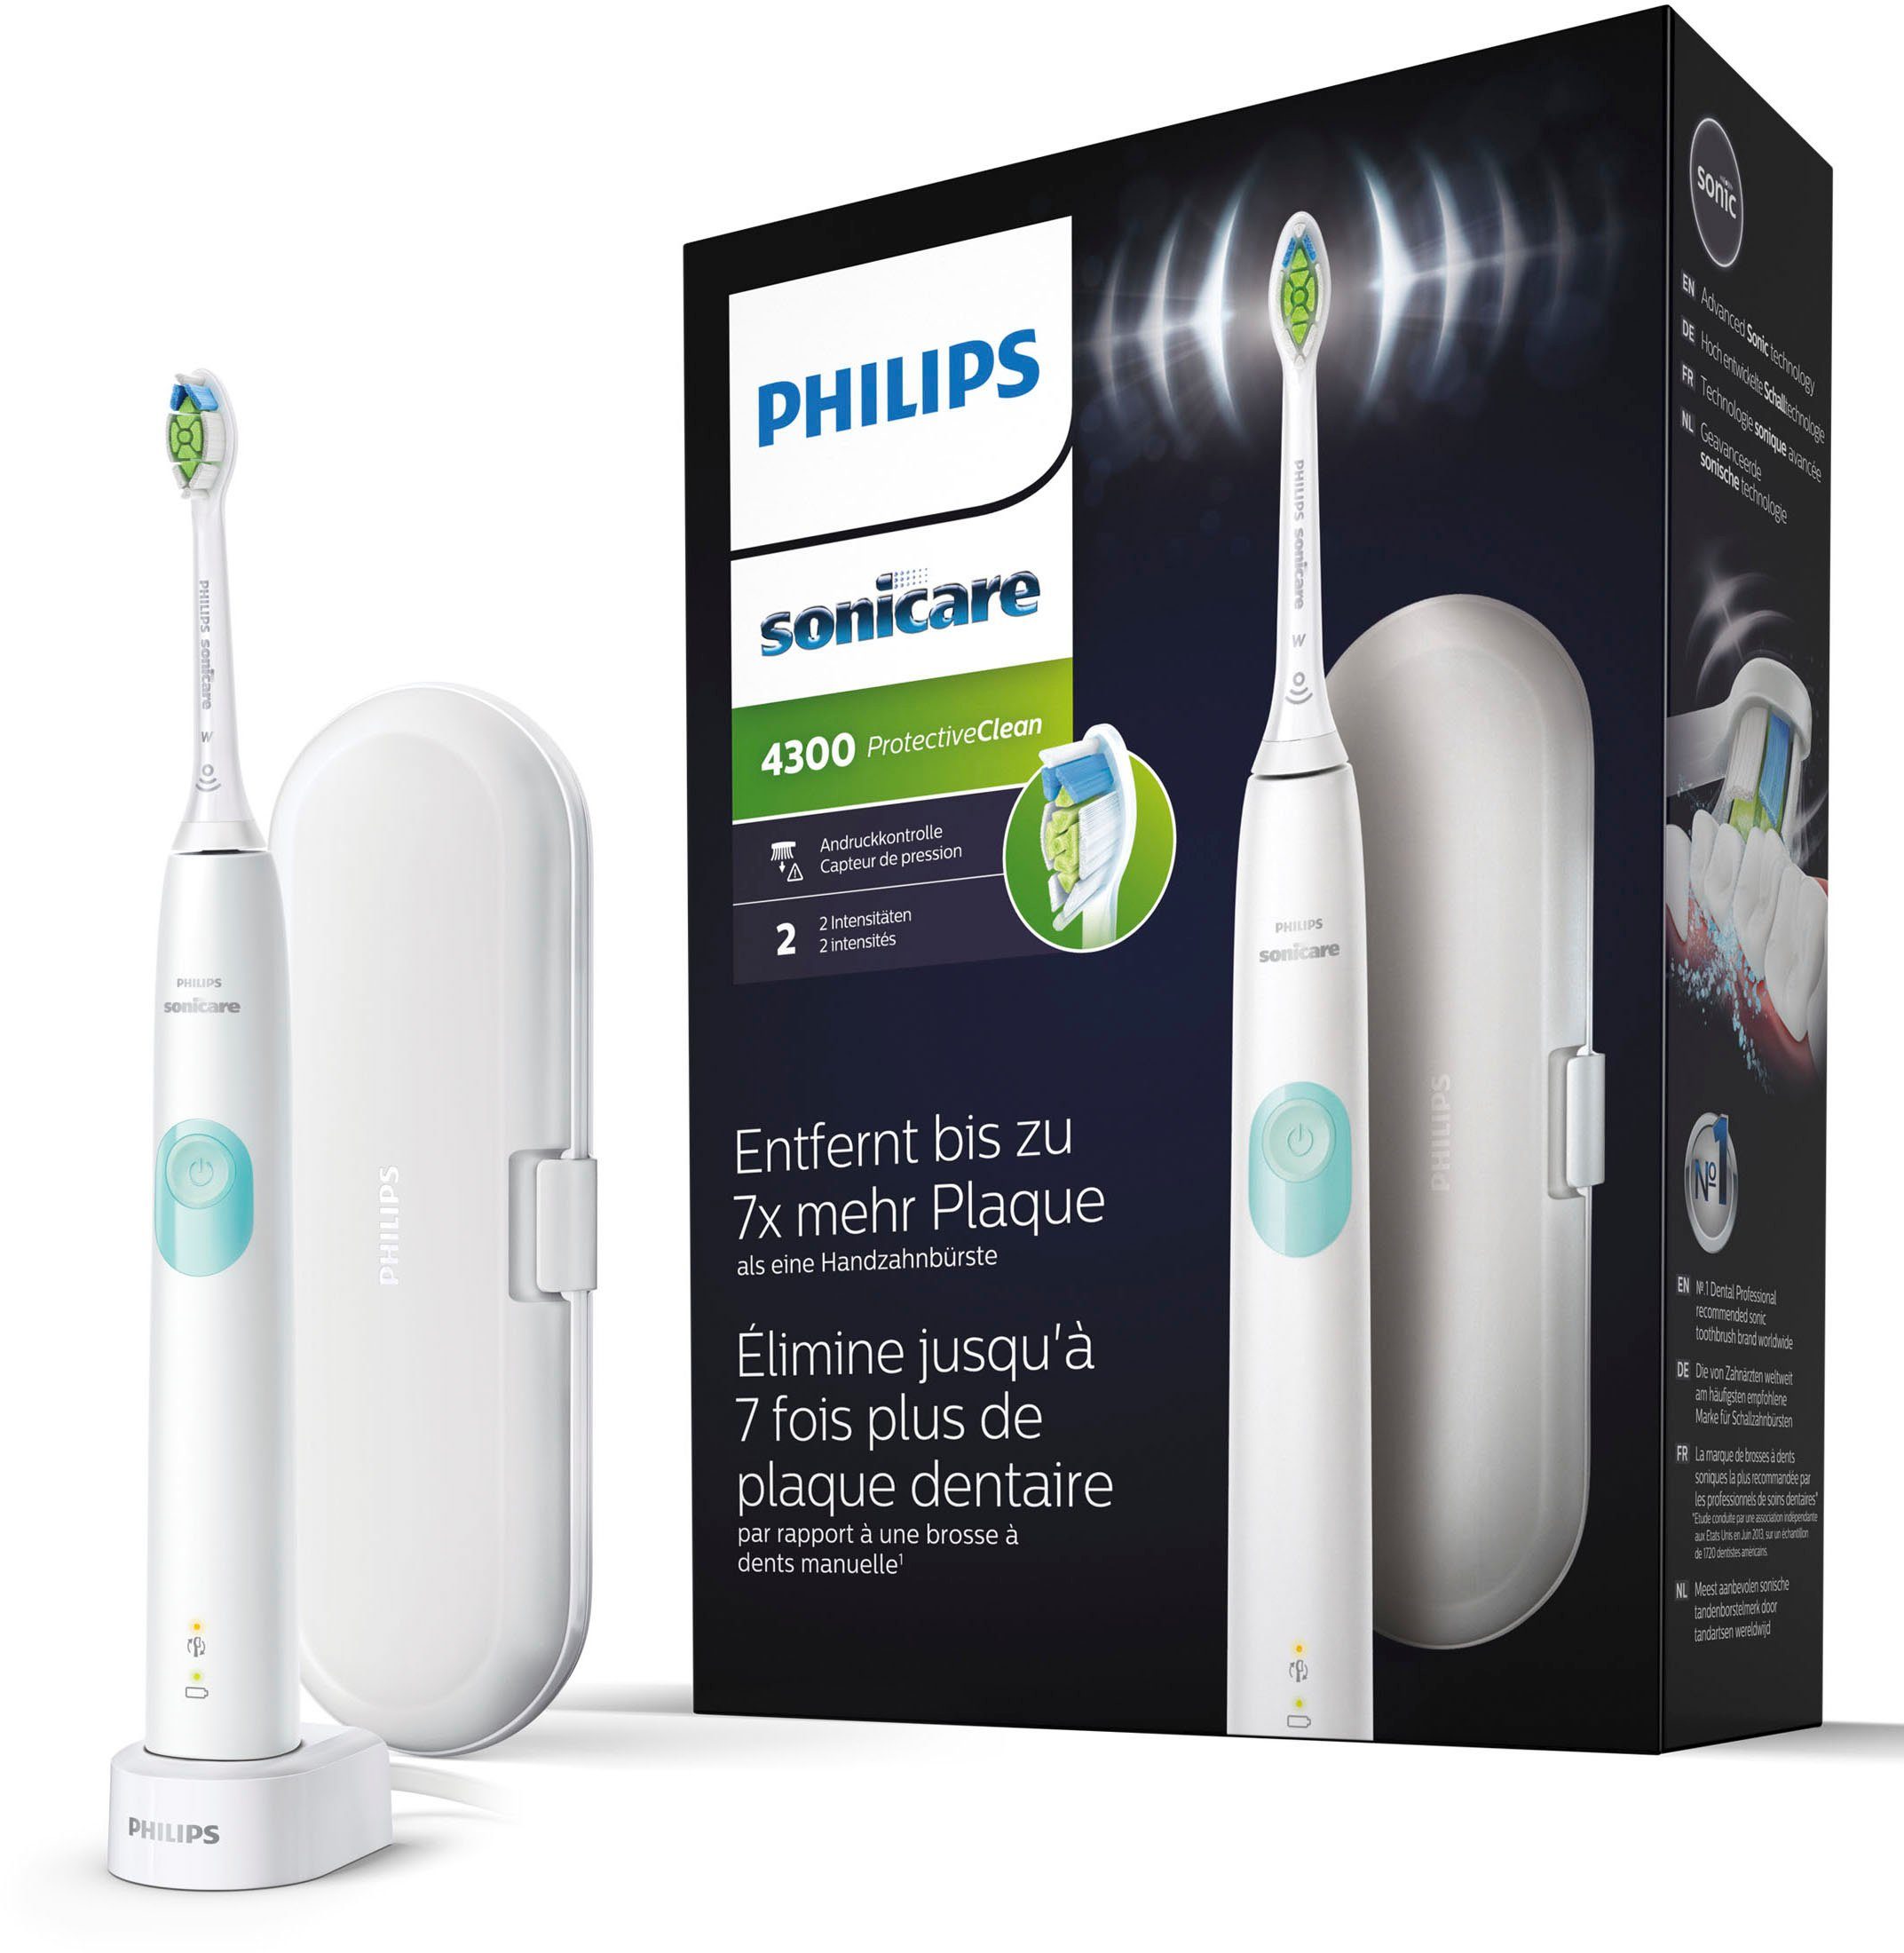 Japan-Onlineshop Philips Sonicare St., ProtectiveClean mit 1 Reiseetui Zahnbürste und Elektrische BrushSync Ladestation, Funktion, Aufsteckbürsten: HX6807/28, 4300 Schalltechnologie